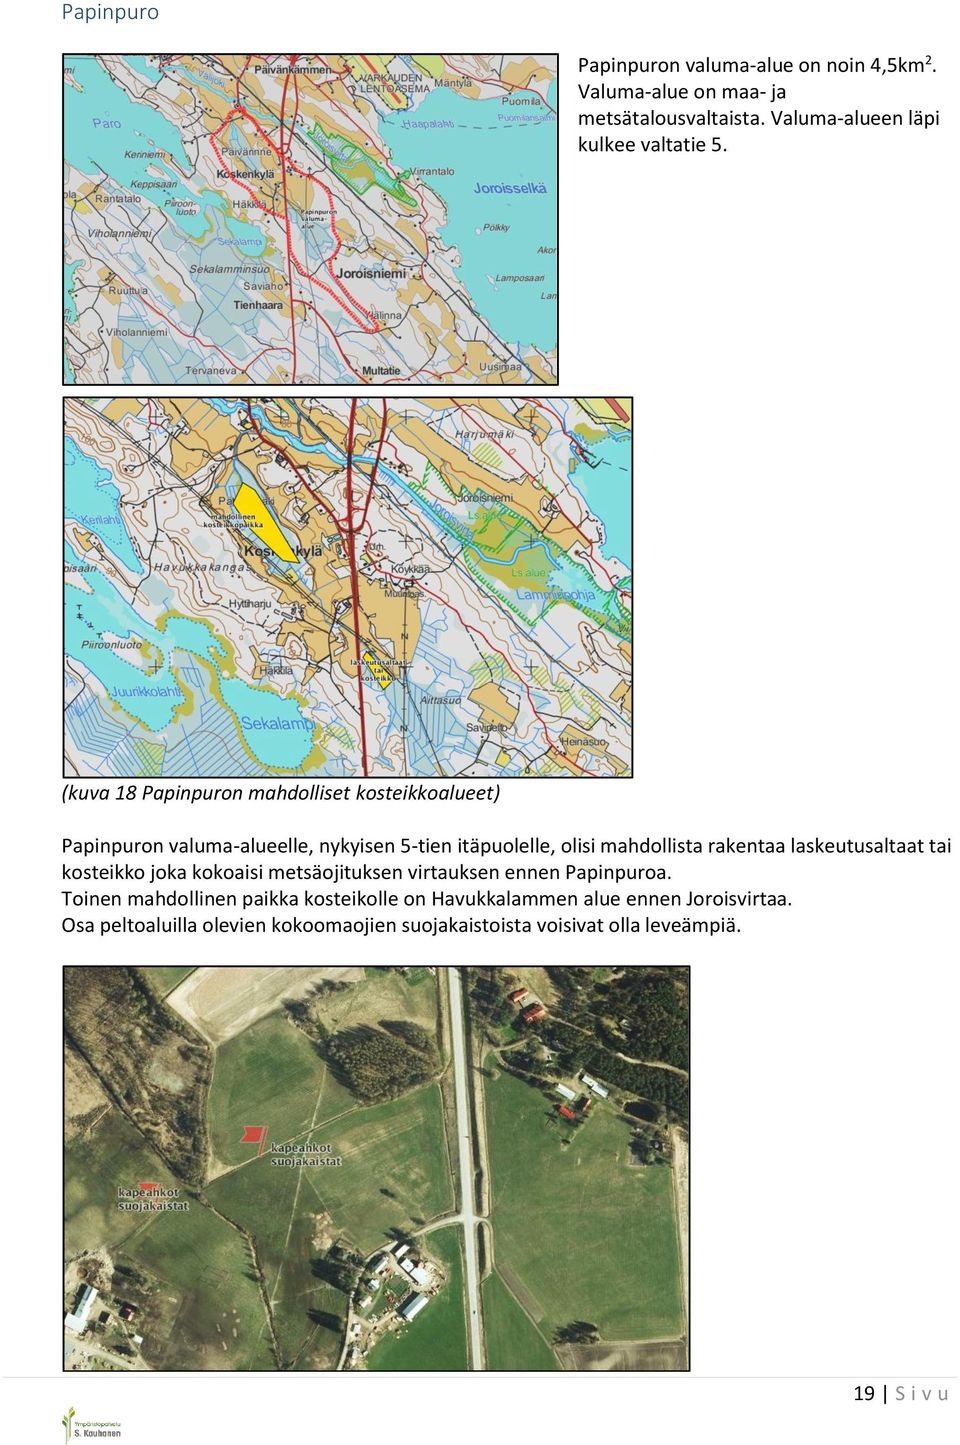 (kuva 18 Papinpuron mahdolliset kosteikkoalueet) Papinpuron valuma-alueelle, nykyisen 5-tien itäpuolelle, olisi mahdollista